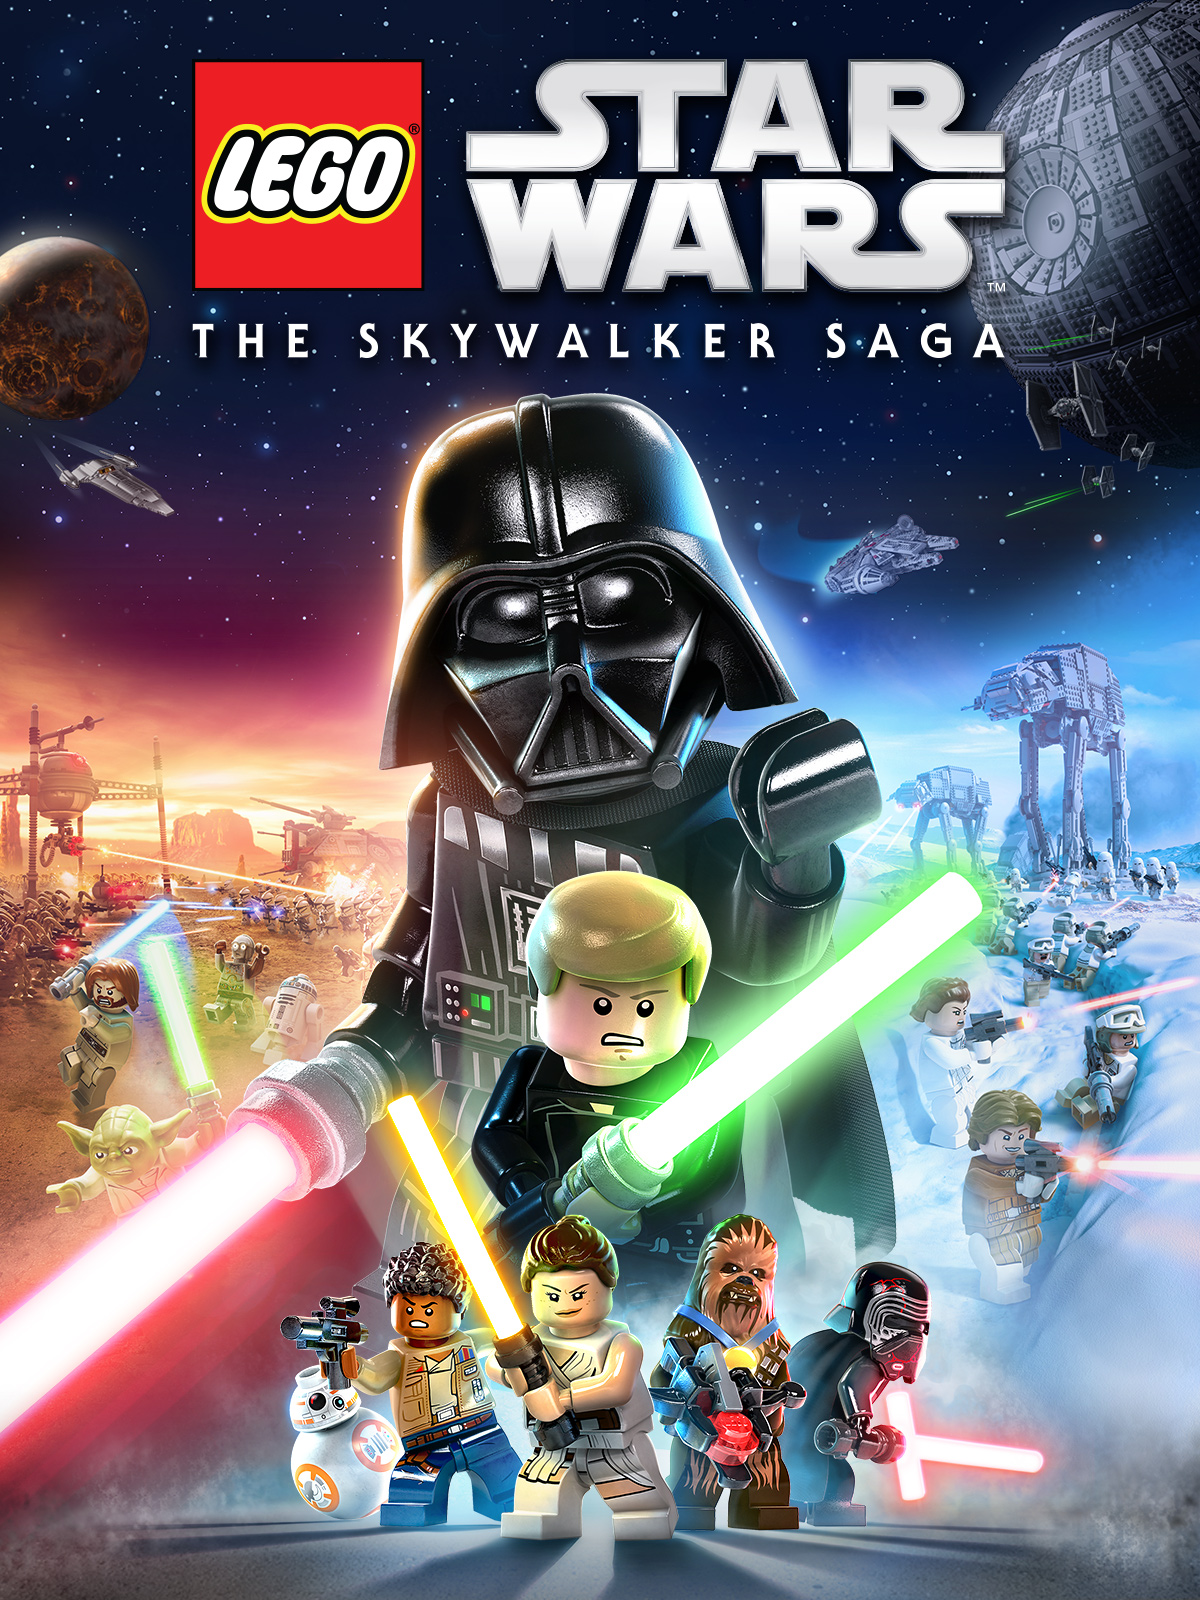 LEGO Star Wars: La Saga Skywalker rompe récords y conquista el mercado de videojuegos